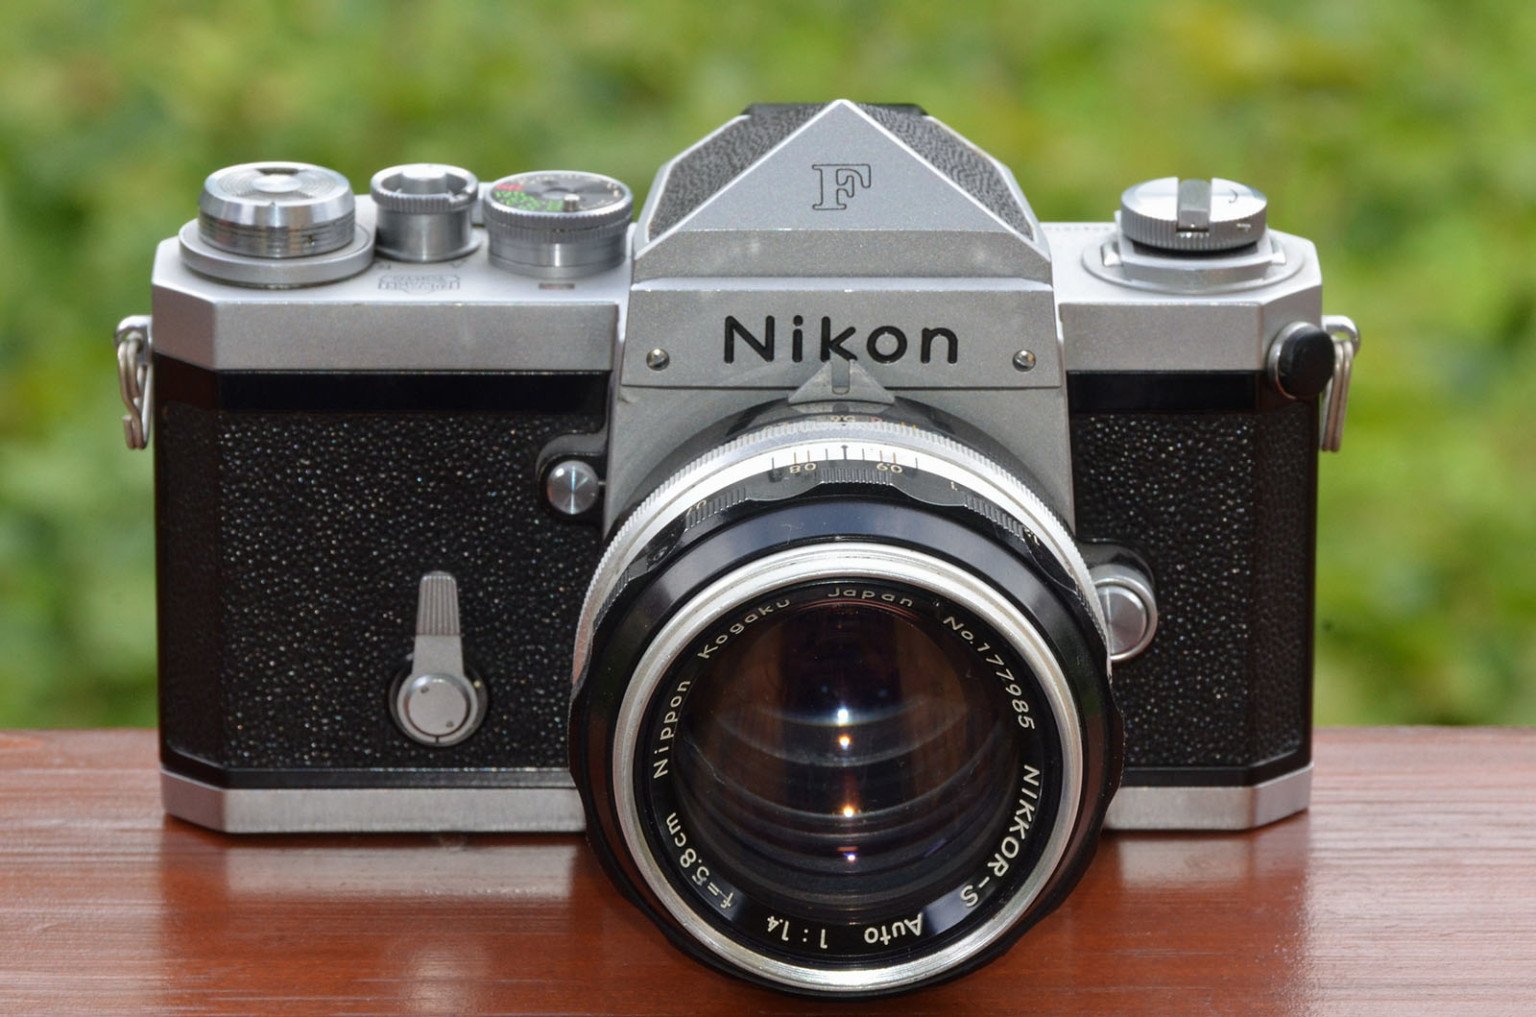 Nikon F ra mắt vào tháng 4 năm 1959